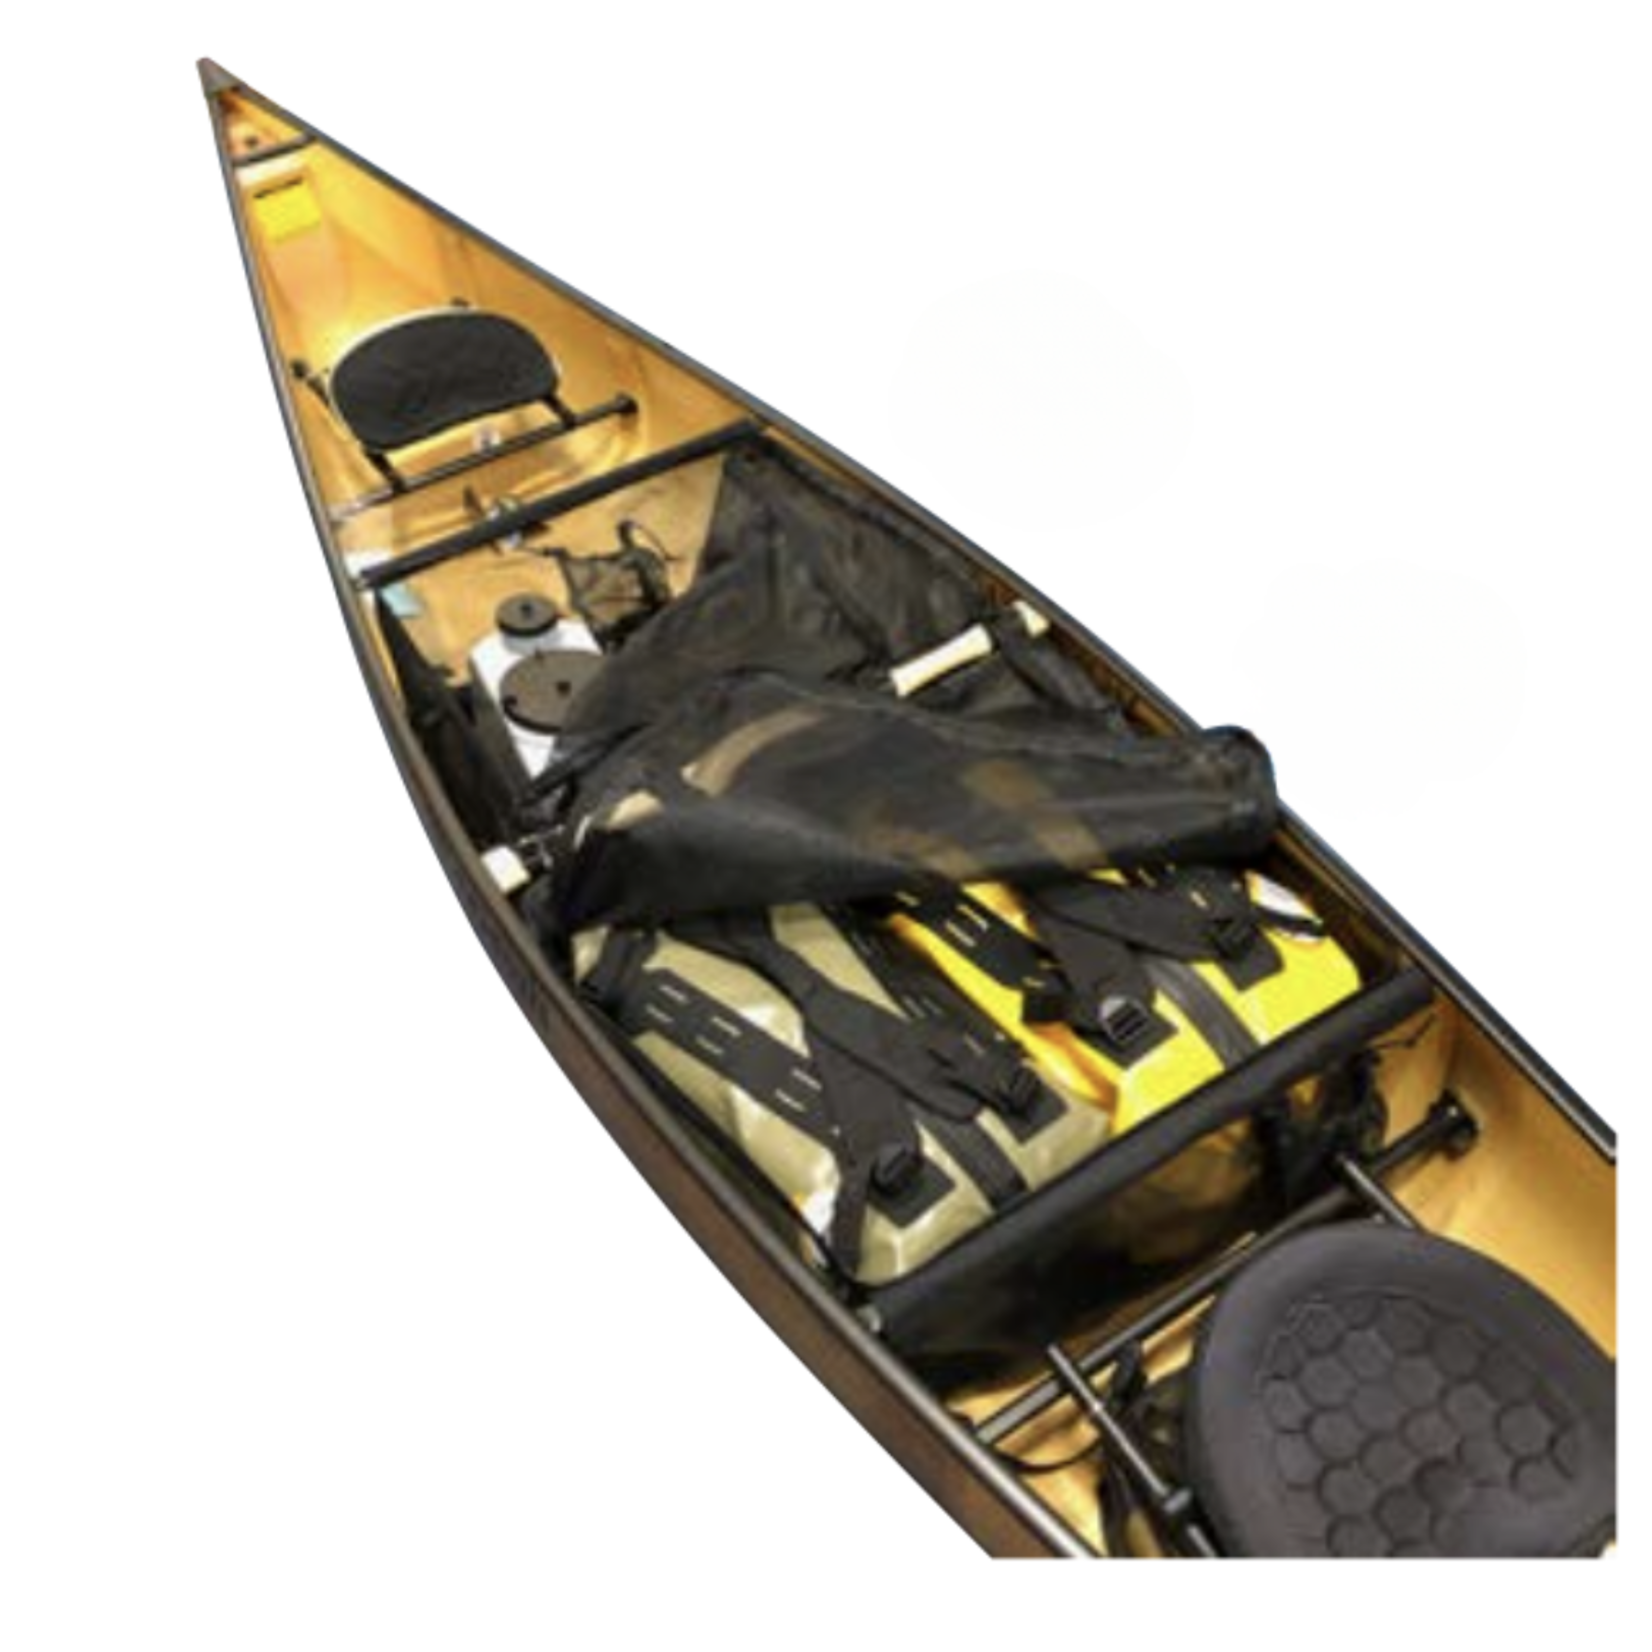 Whitewater Designs Canoe Tandem Center Bag: Stern of Yoke